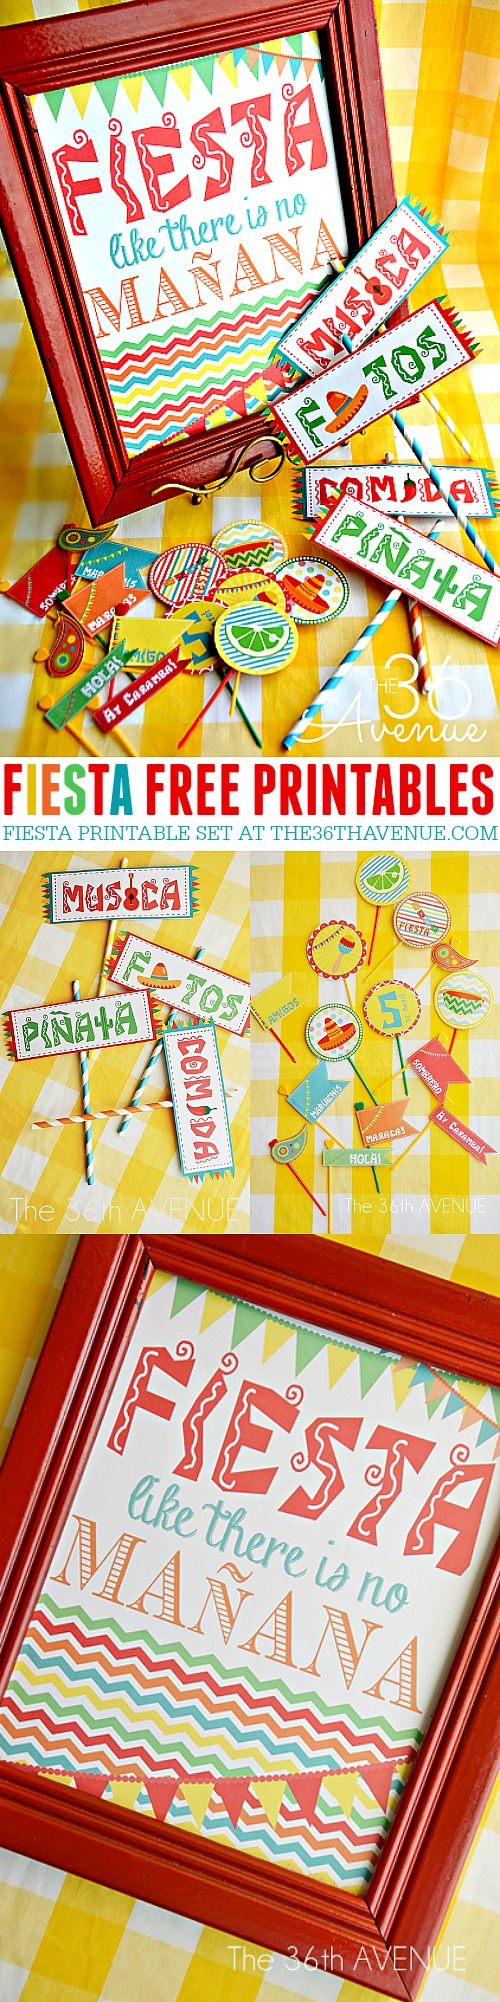 Cinco de Mayo Fiesta Printables at the36thavenue.com